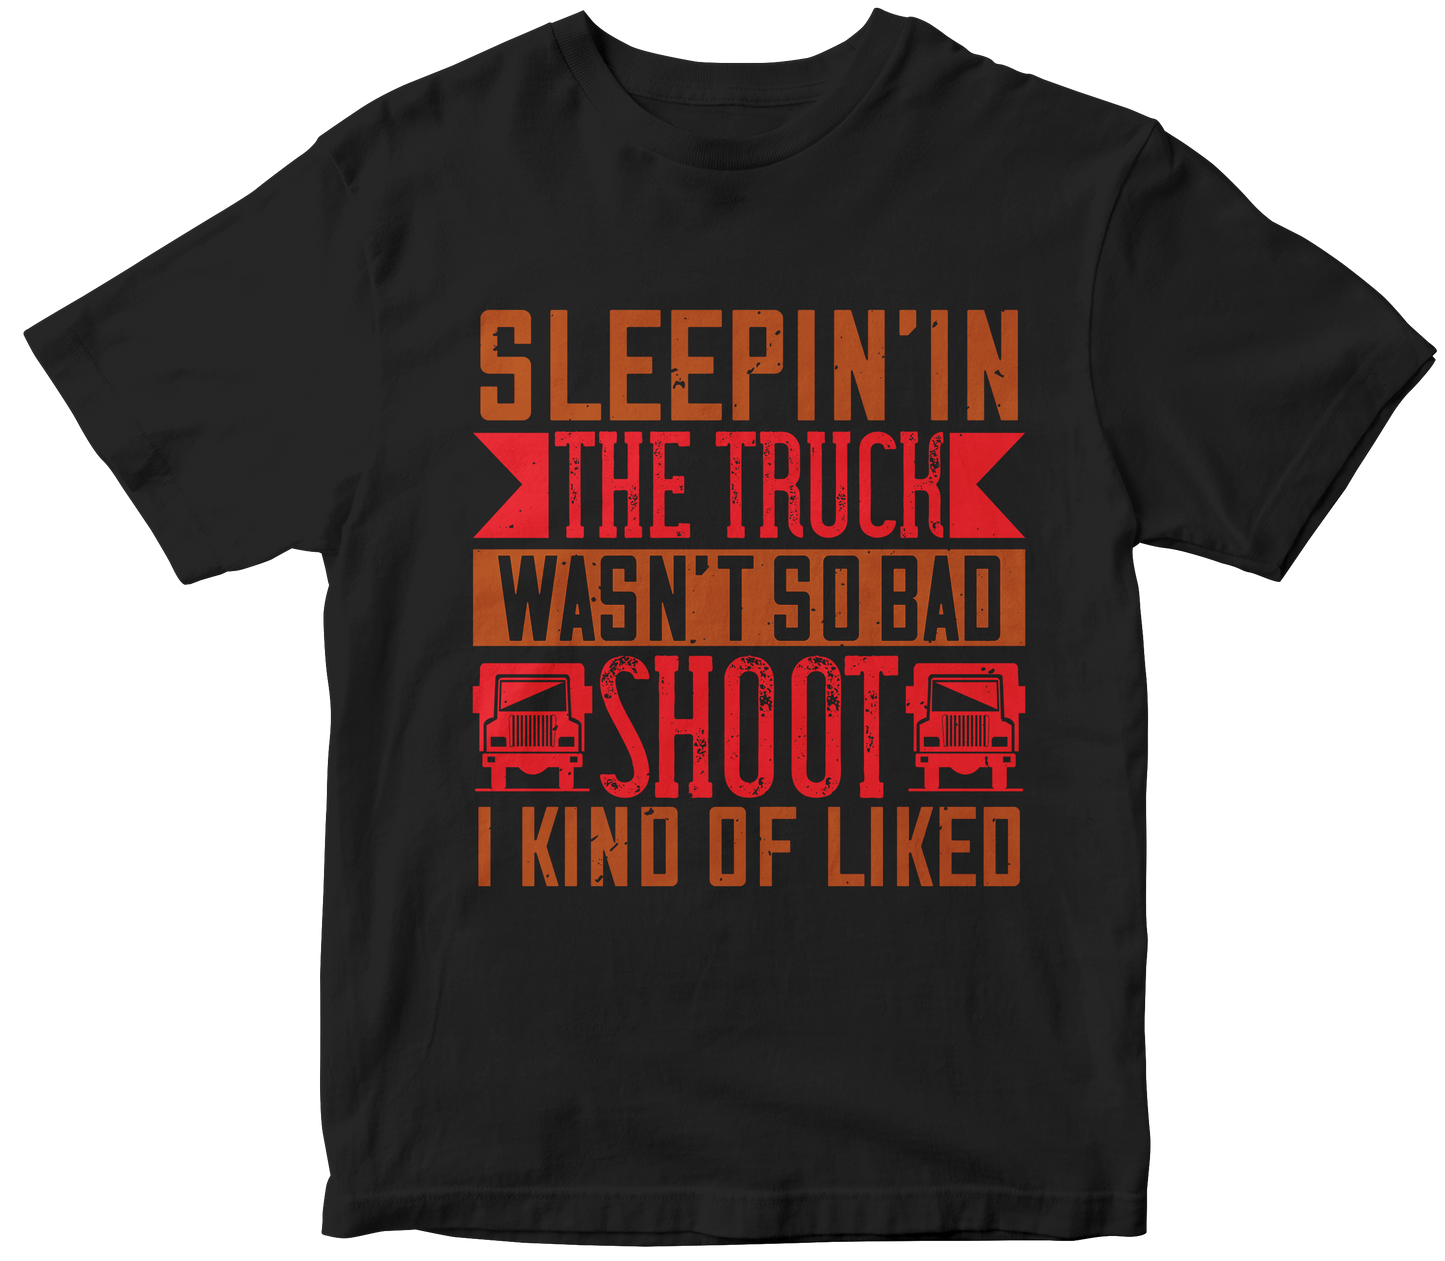 Sleepin’ in the truck wasn’t so bad